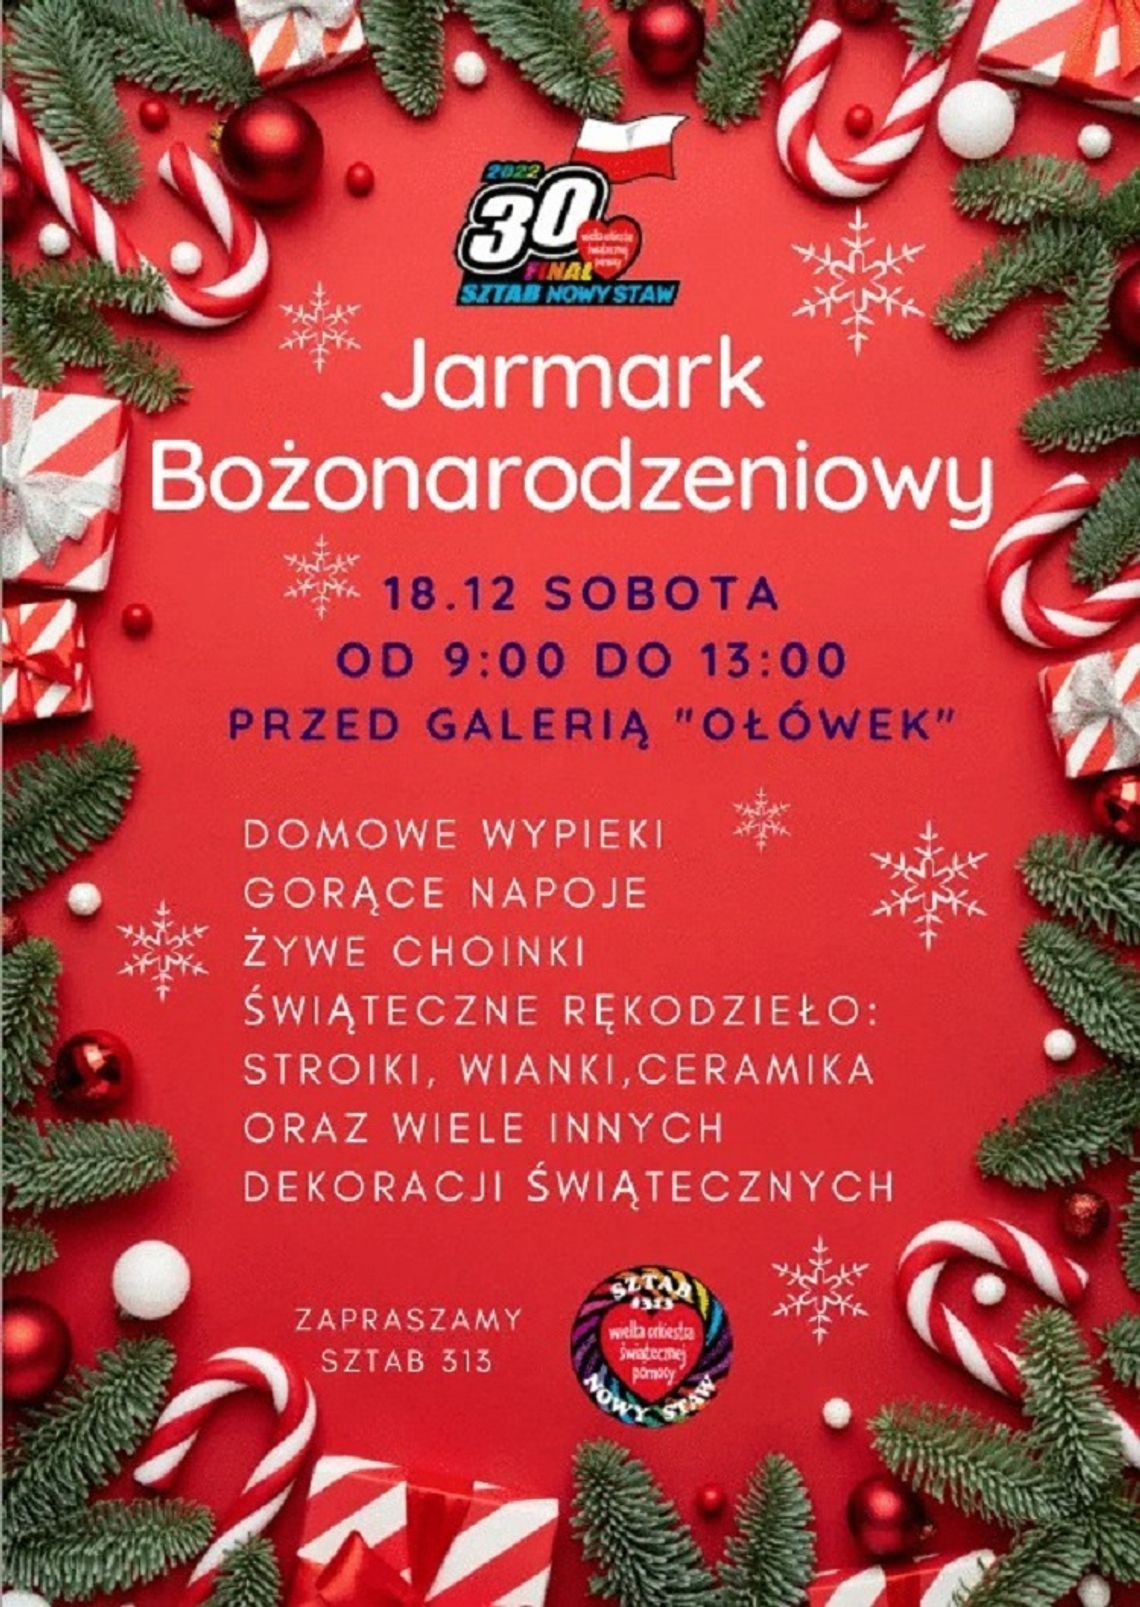 Jarmark Bożonarodzeniowy w Nowym Stawie.